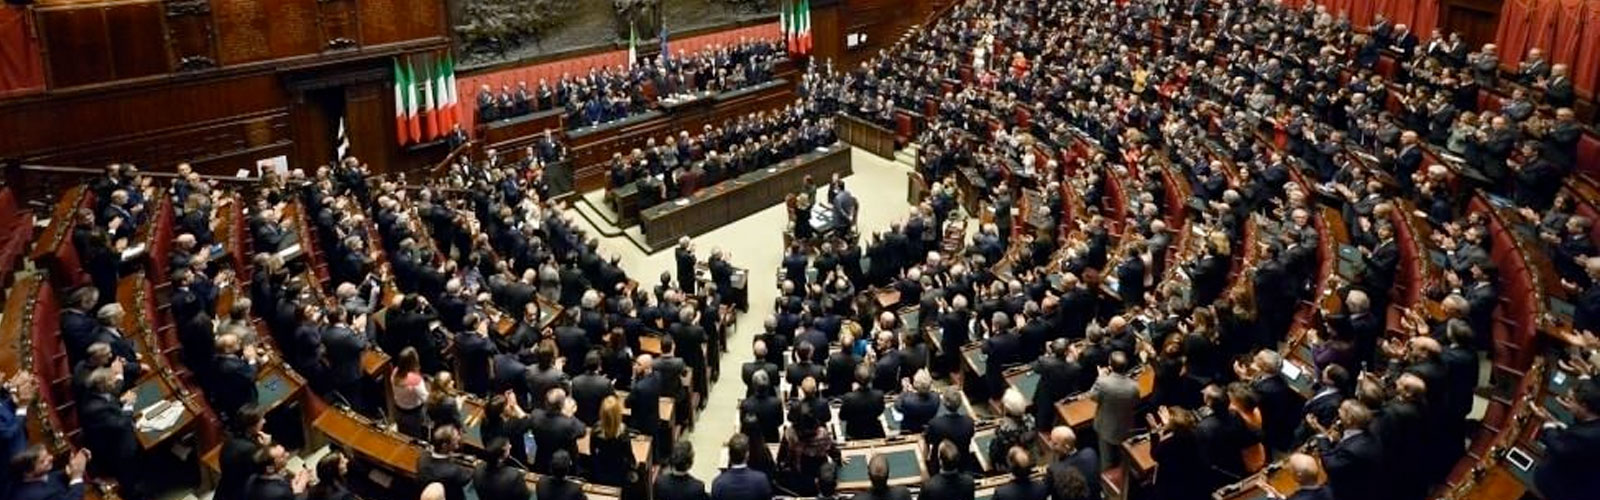 [ANNULLATO] Riduzione dei parlamentari e futuro della democrazia rappresentativa verso (e oltre) il referendum costituzionale italiano